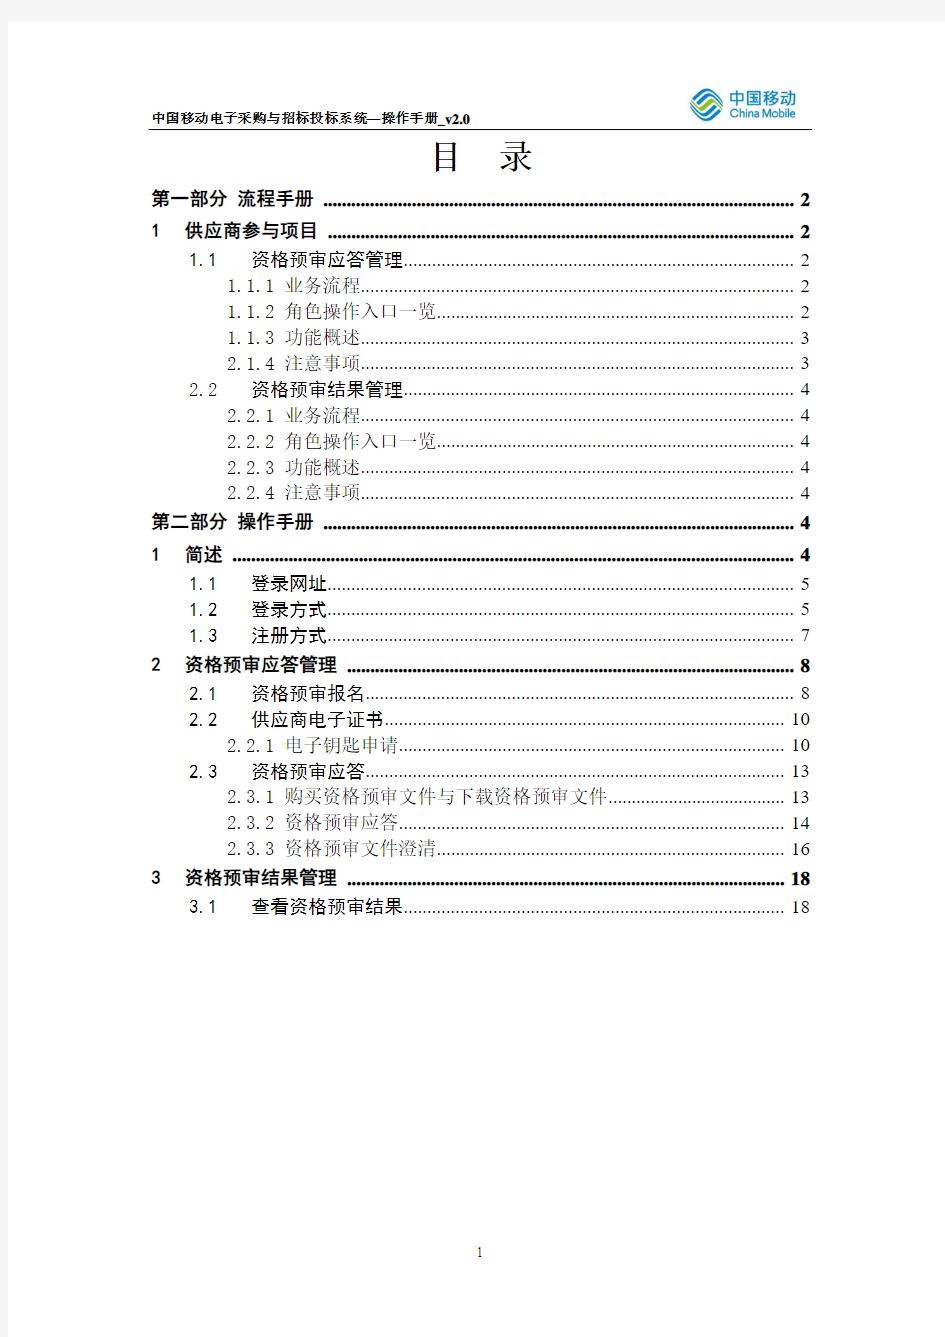 中国移动电子采购与招标投标系统-操作手册-资格预审-供应商分册_V2.0